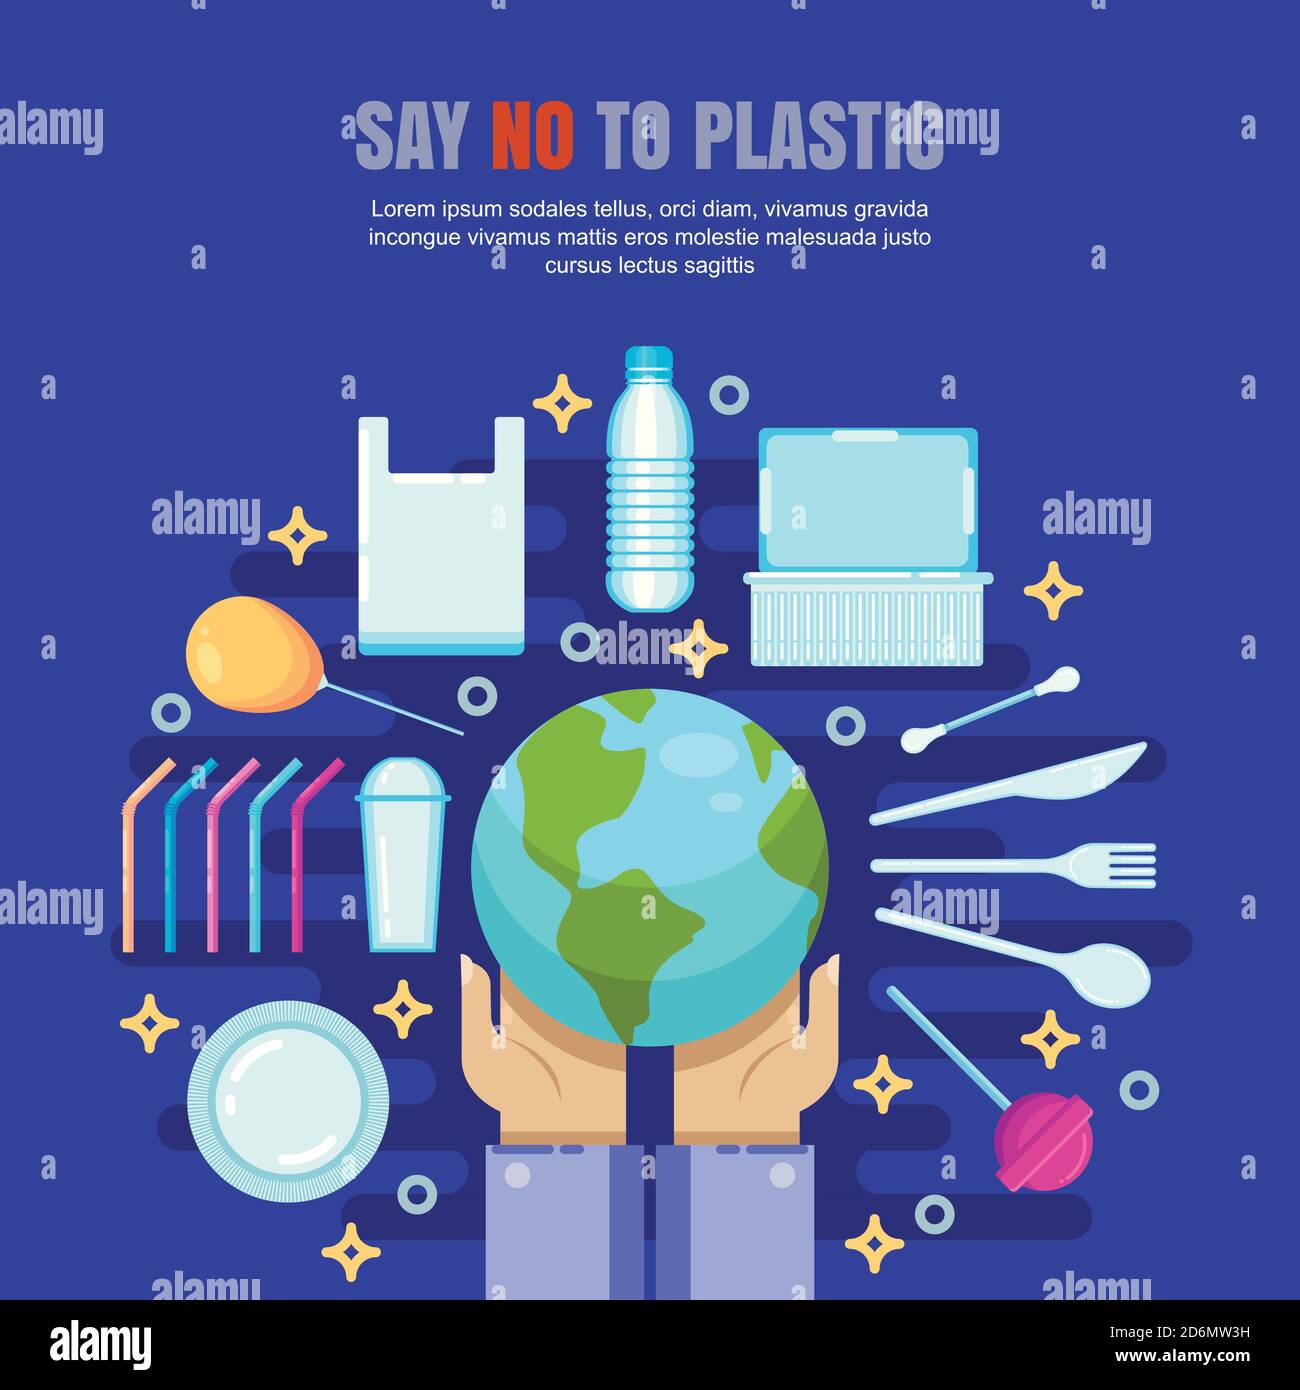 Plastikmüll Verschmutzung Konzept. Sagen Sie Nein zu plastischer Vektorgrafik. Ökologie und Umweltprobleme Banner, Poster Design. Stock Vektor